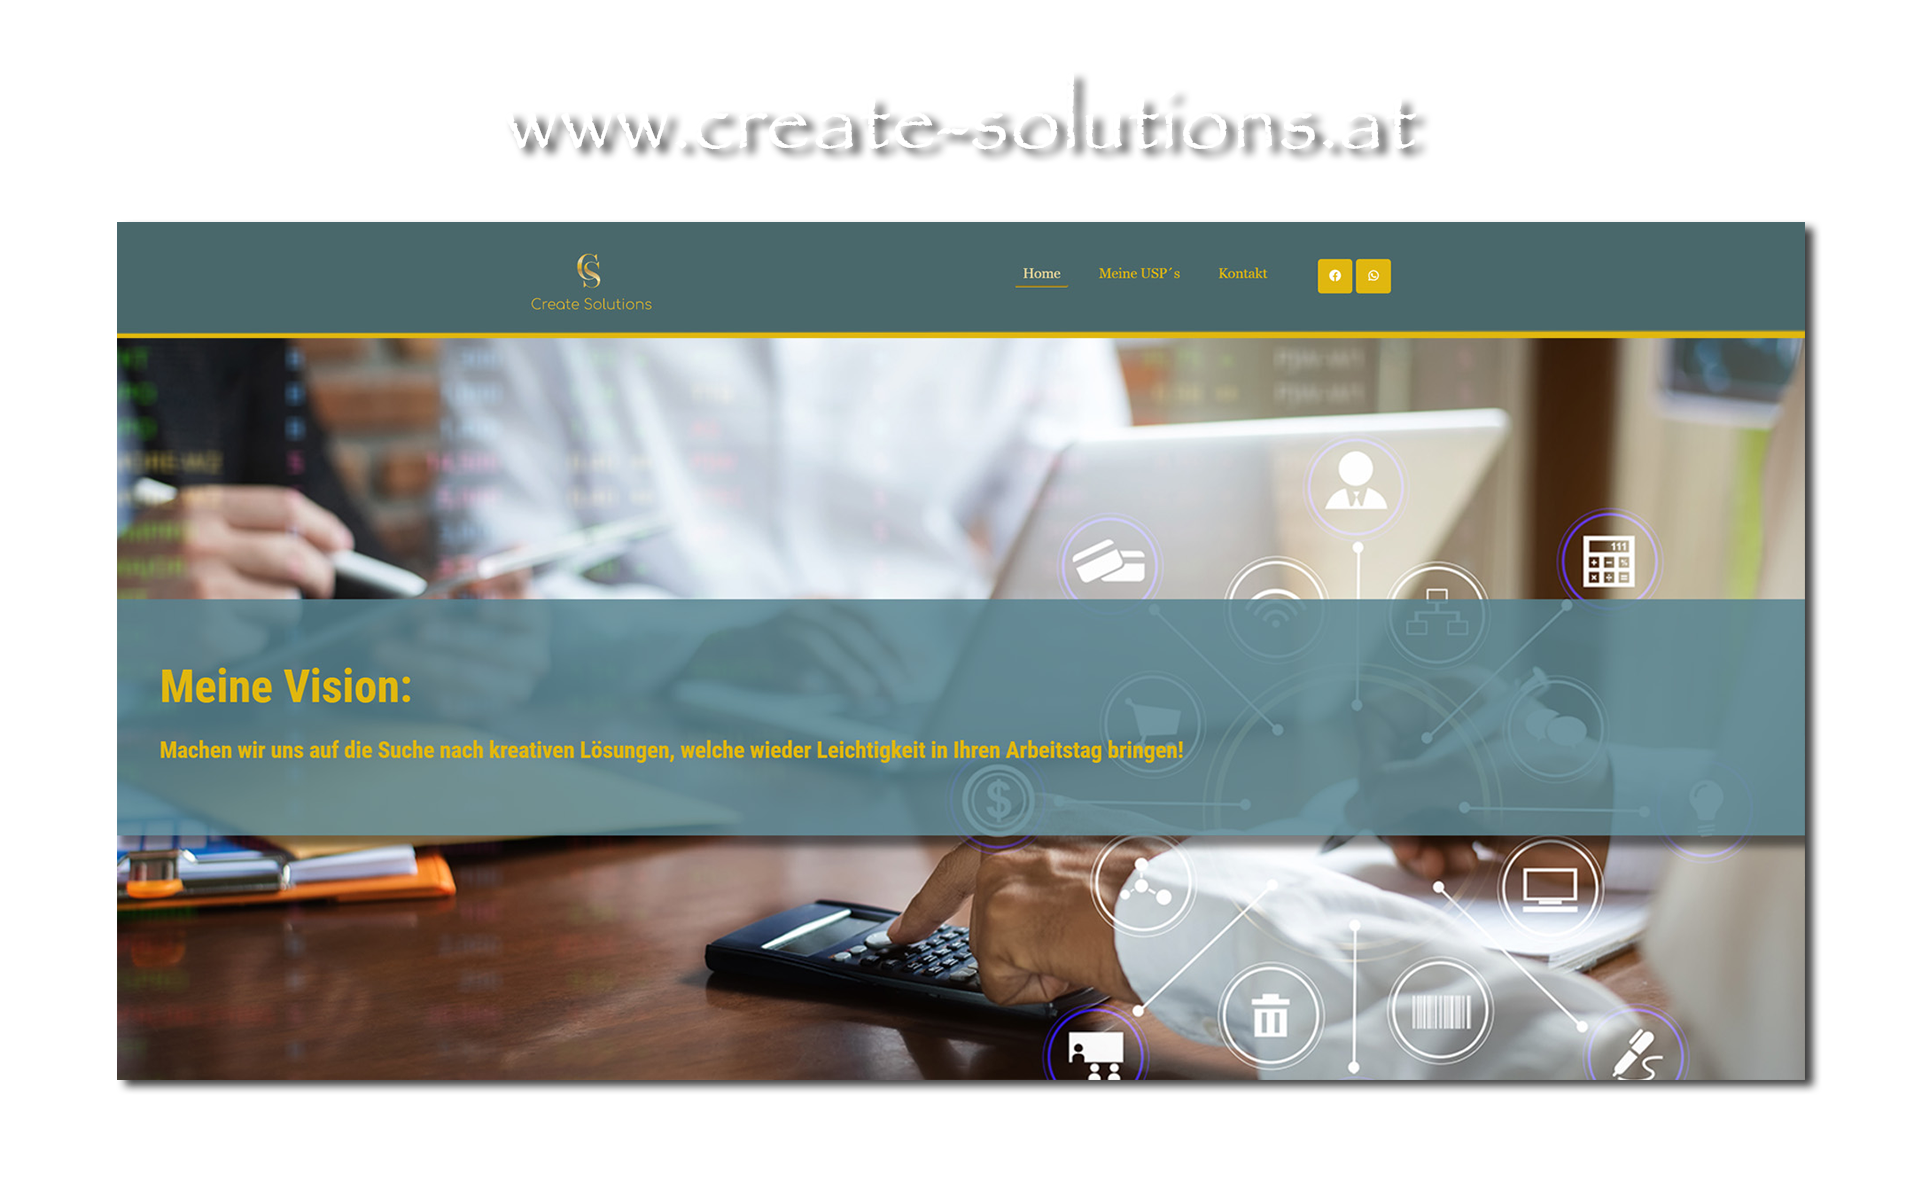 Werbeagentur hassijun - www.hassijun.com - www.create-solutions.at - Referenz